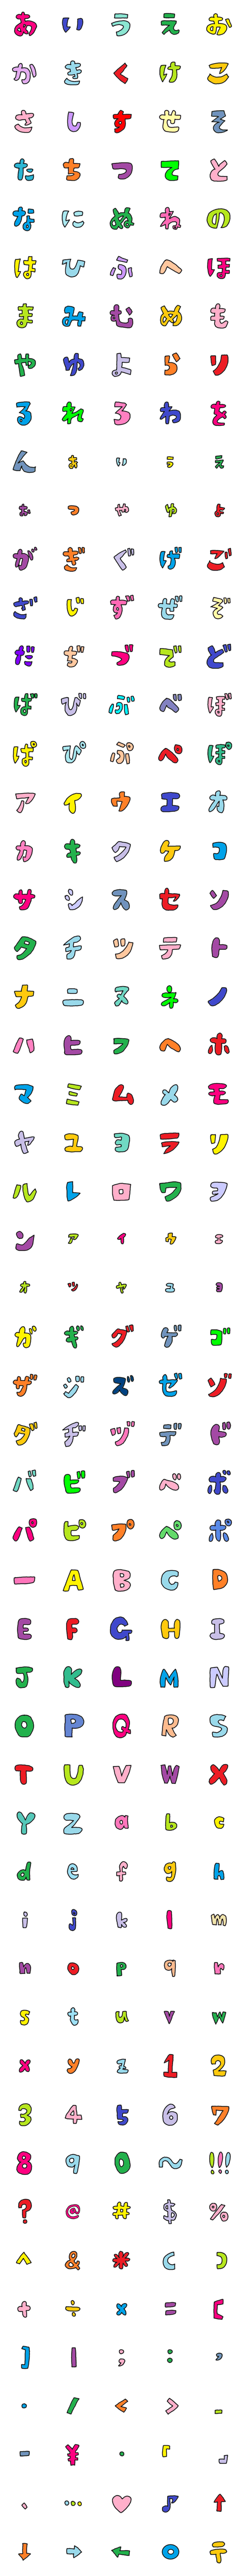 moji emoji word-詳細画像